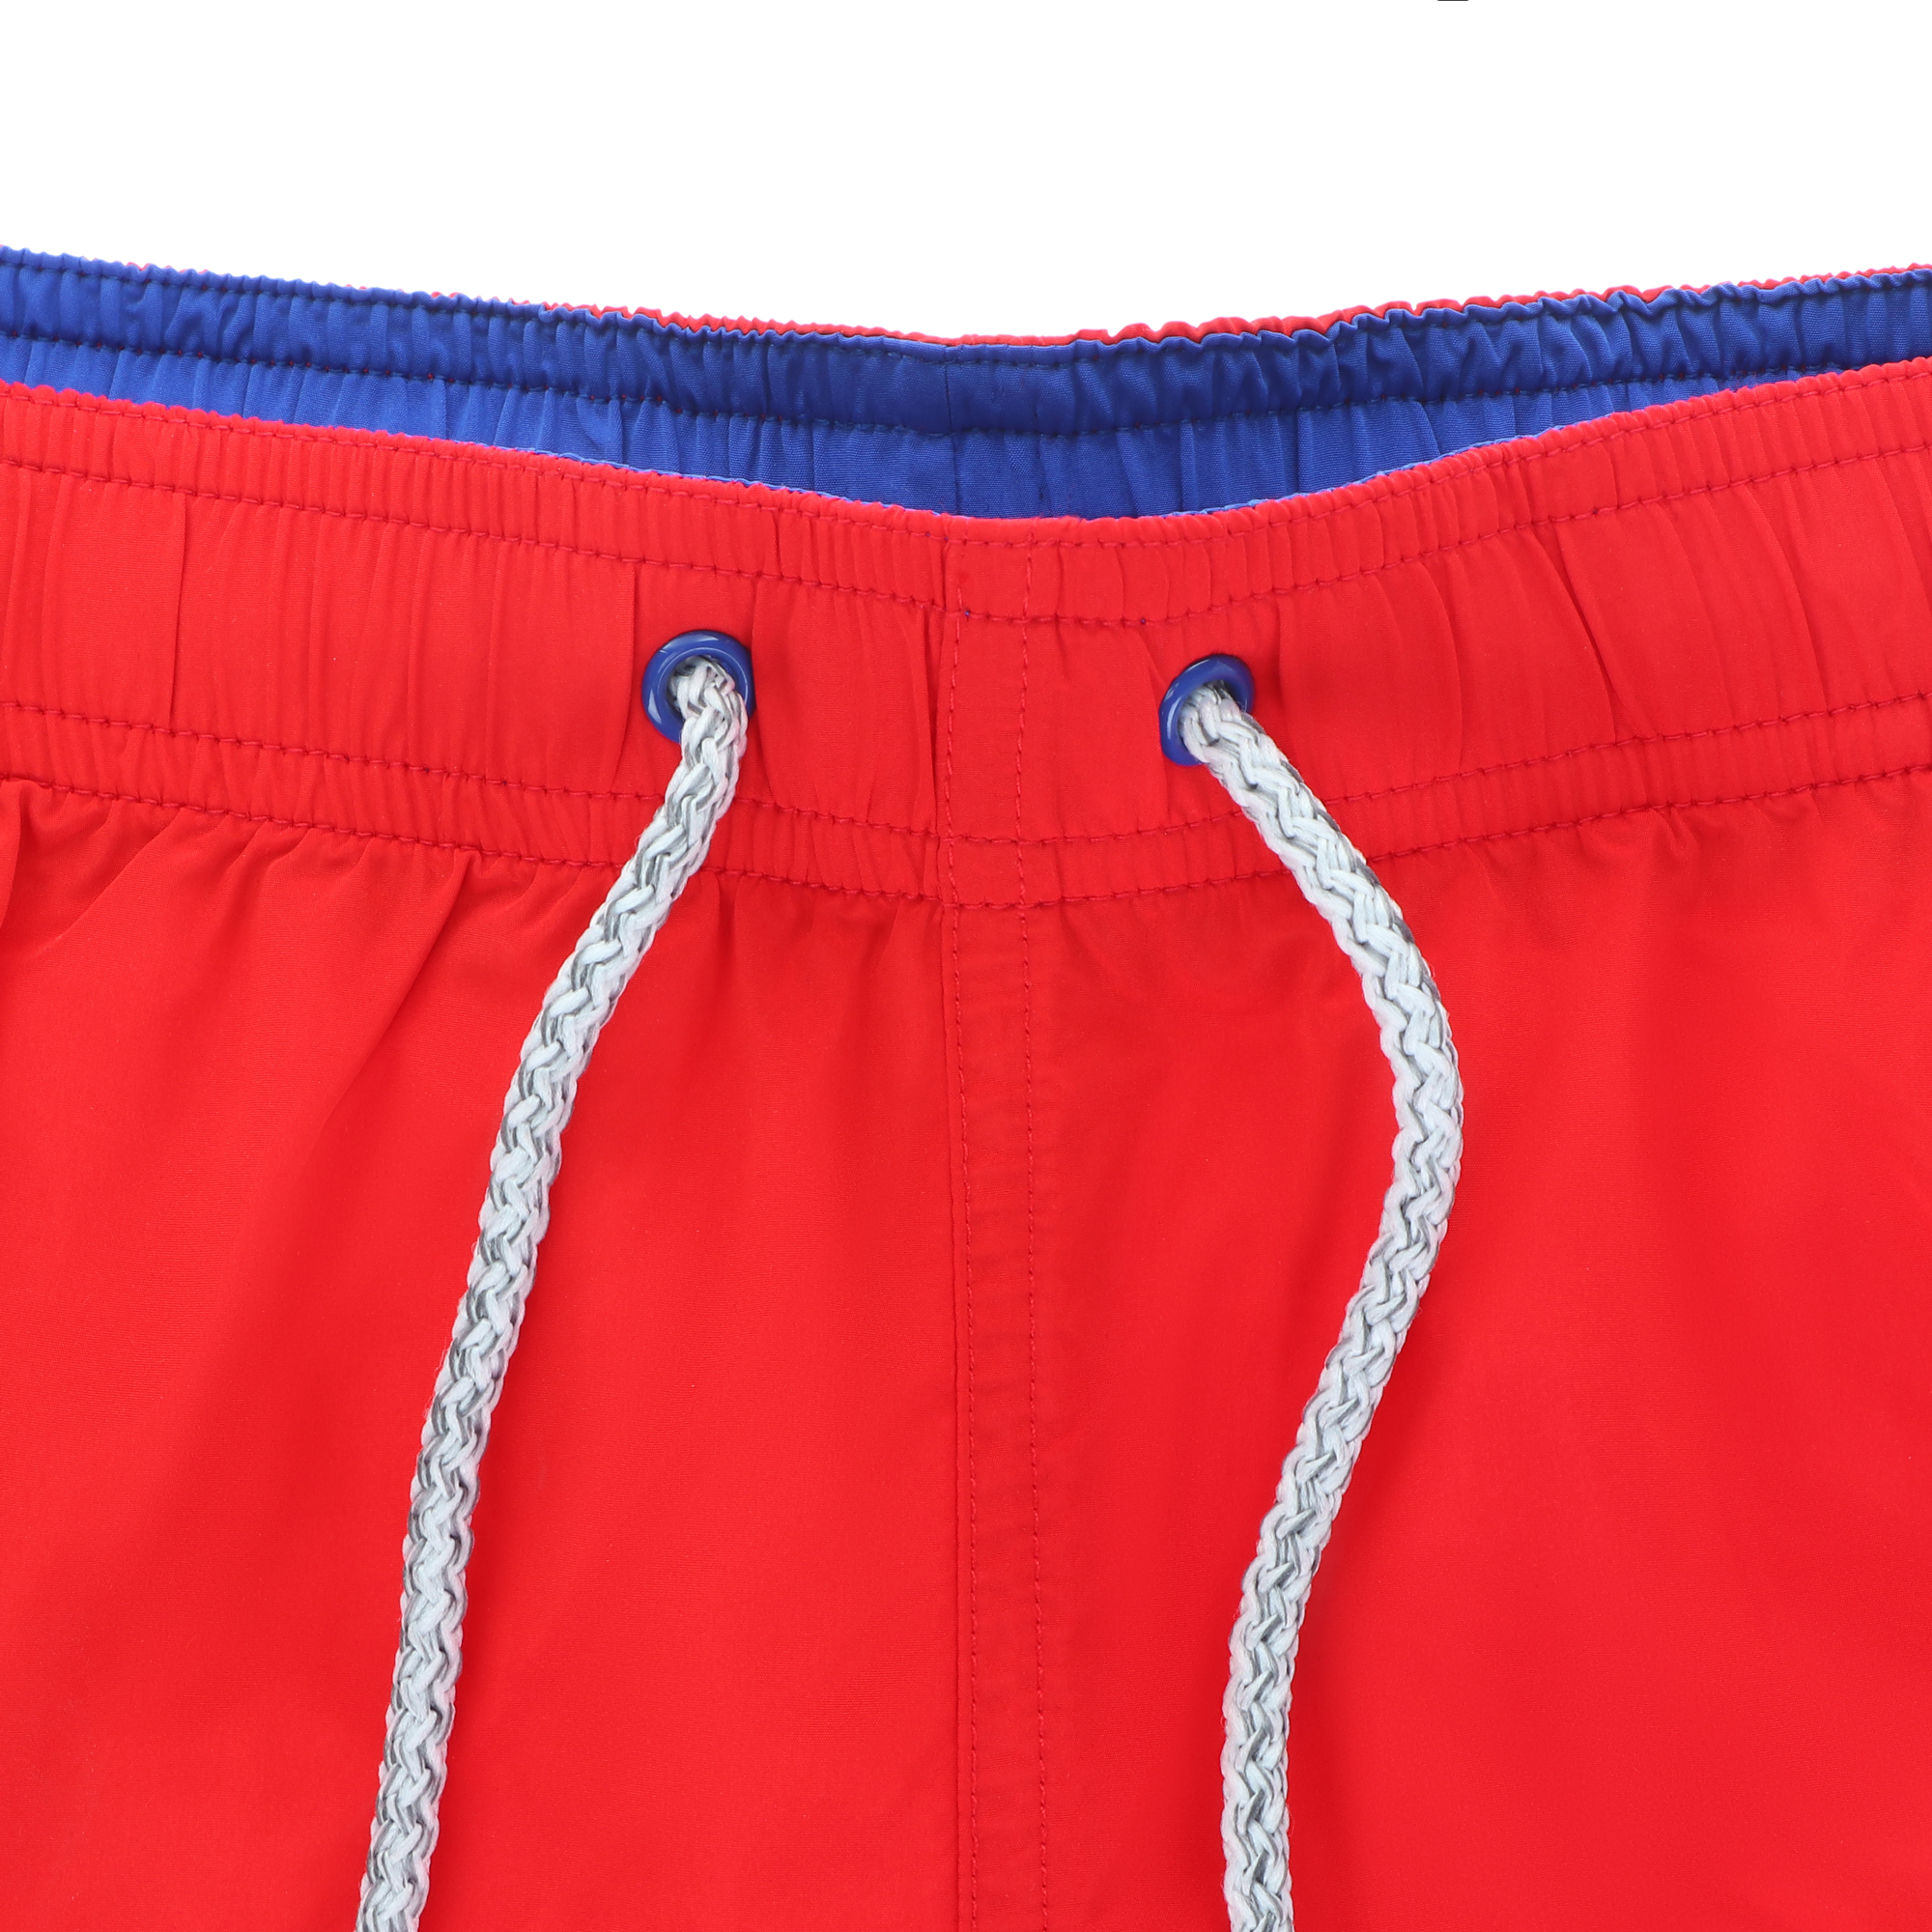 Мужские пляжные шорты Joyord красные, цвет красный, размер L - фото 3